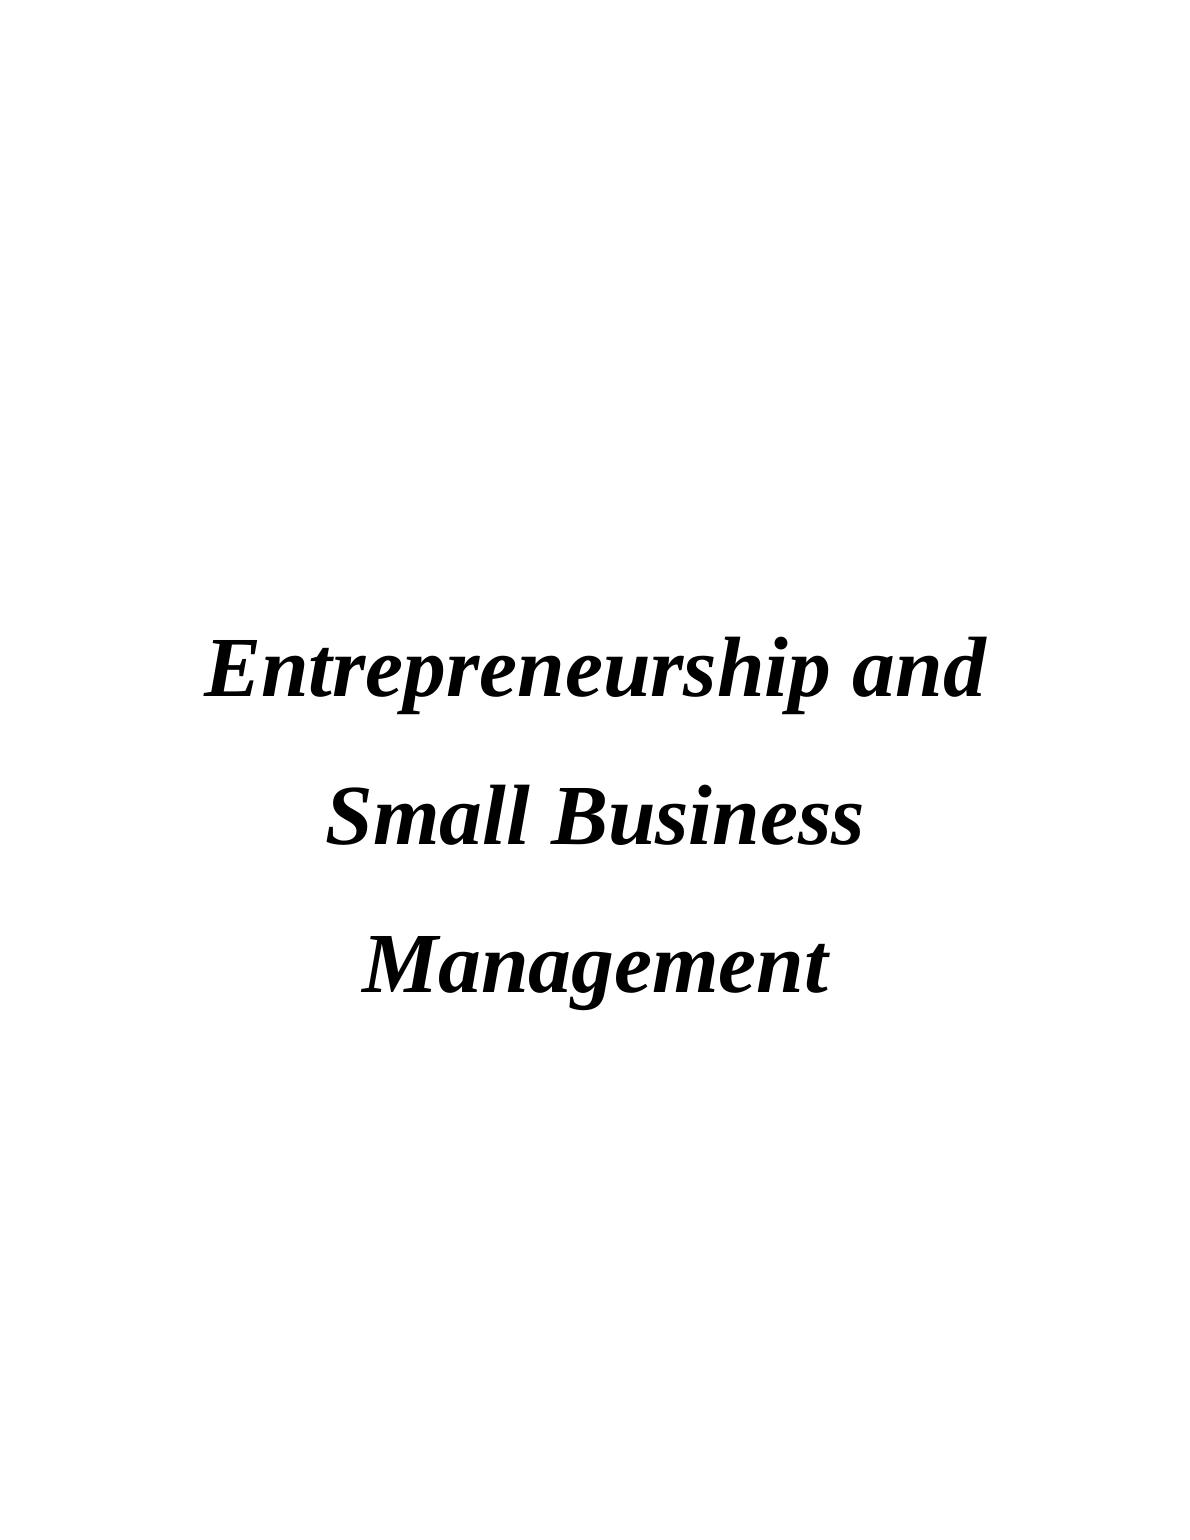 Small Business Management & Entrepreneurship | Report_1